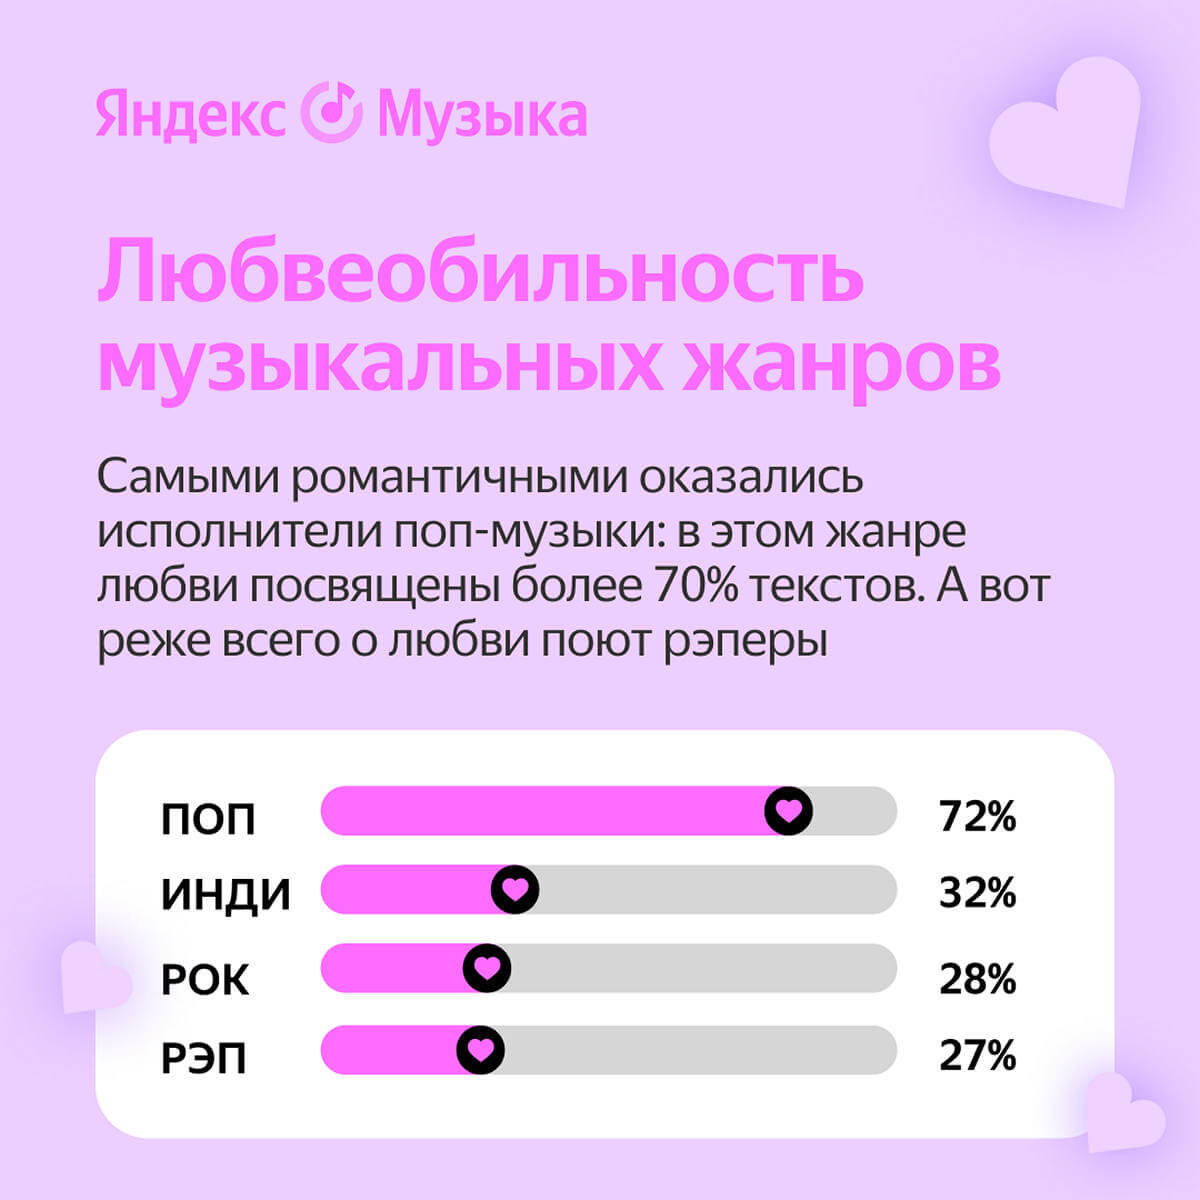 Яндекс Музыка исследовала тексты песен о любви